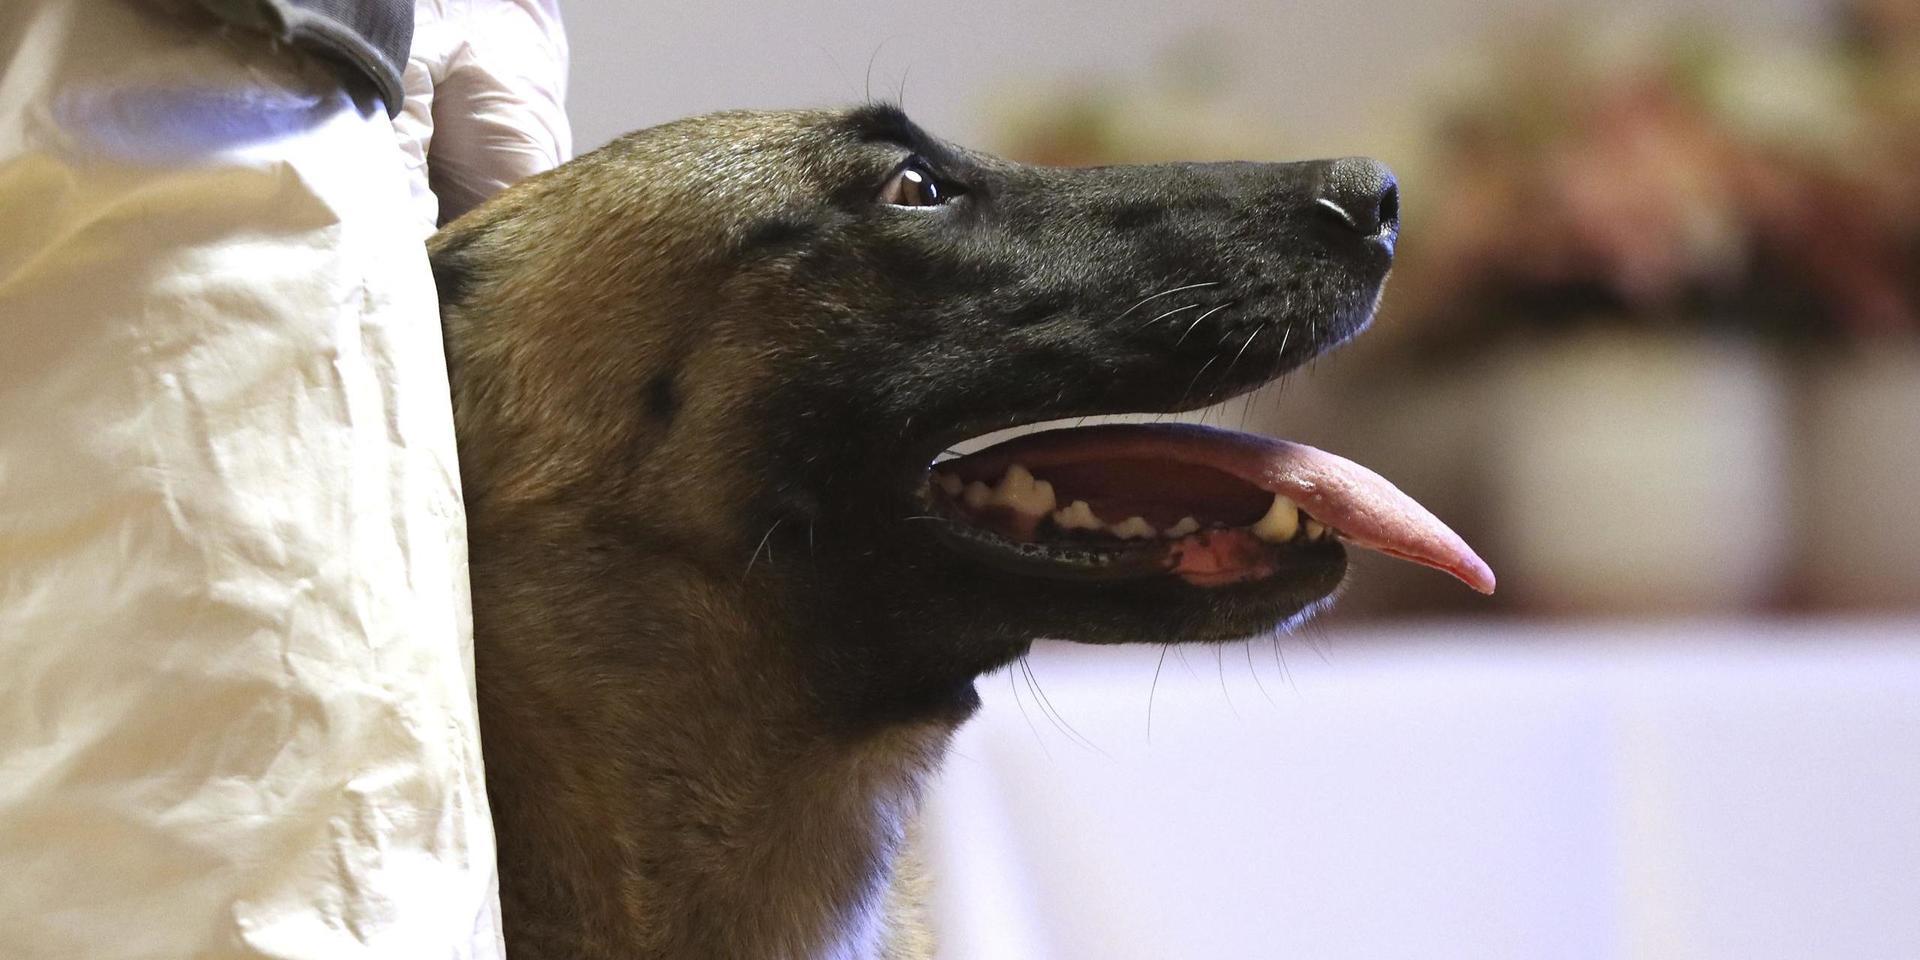 Många polishundar har fått nya uppgifter i pandemin. Här är en covidhund under upplärning i Österrike. Arkivbild.